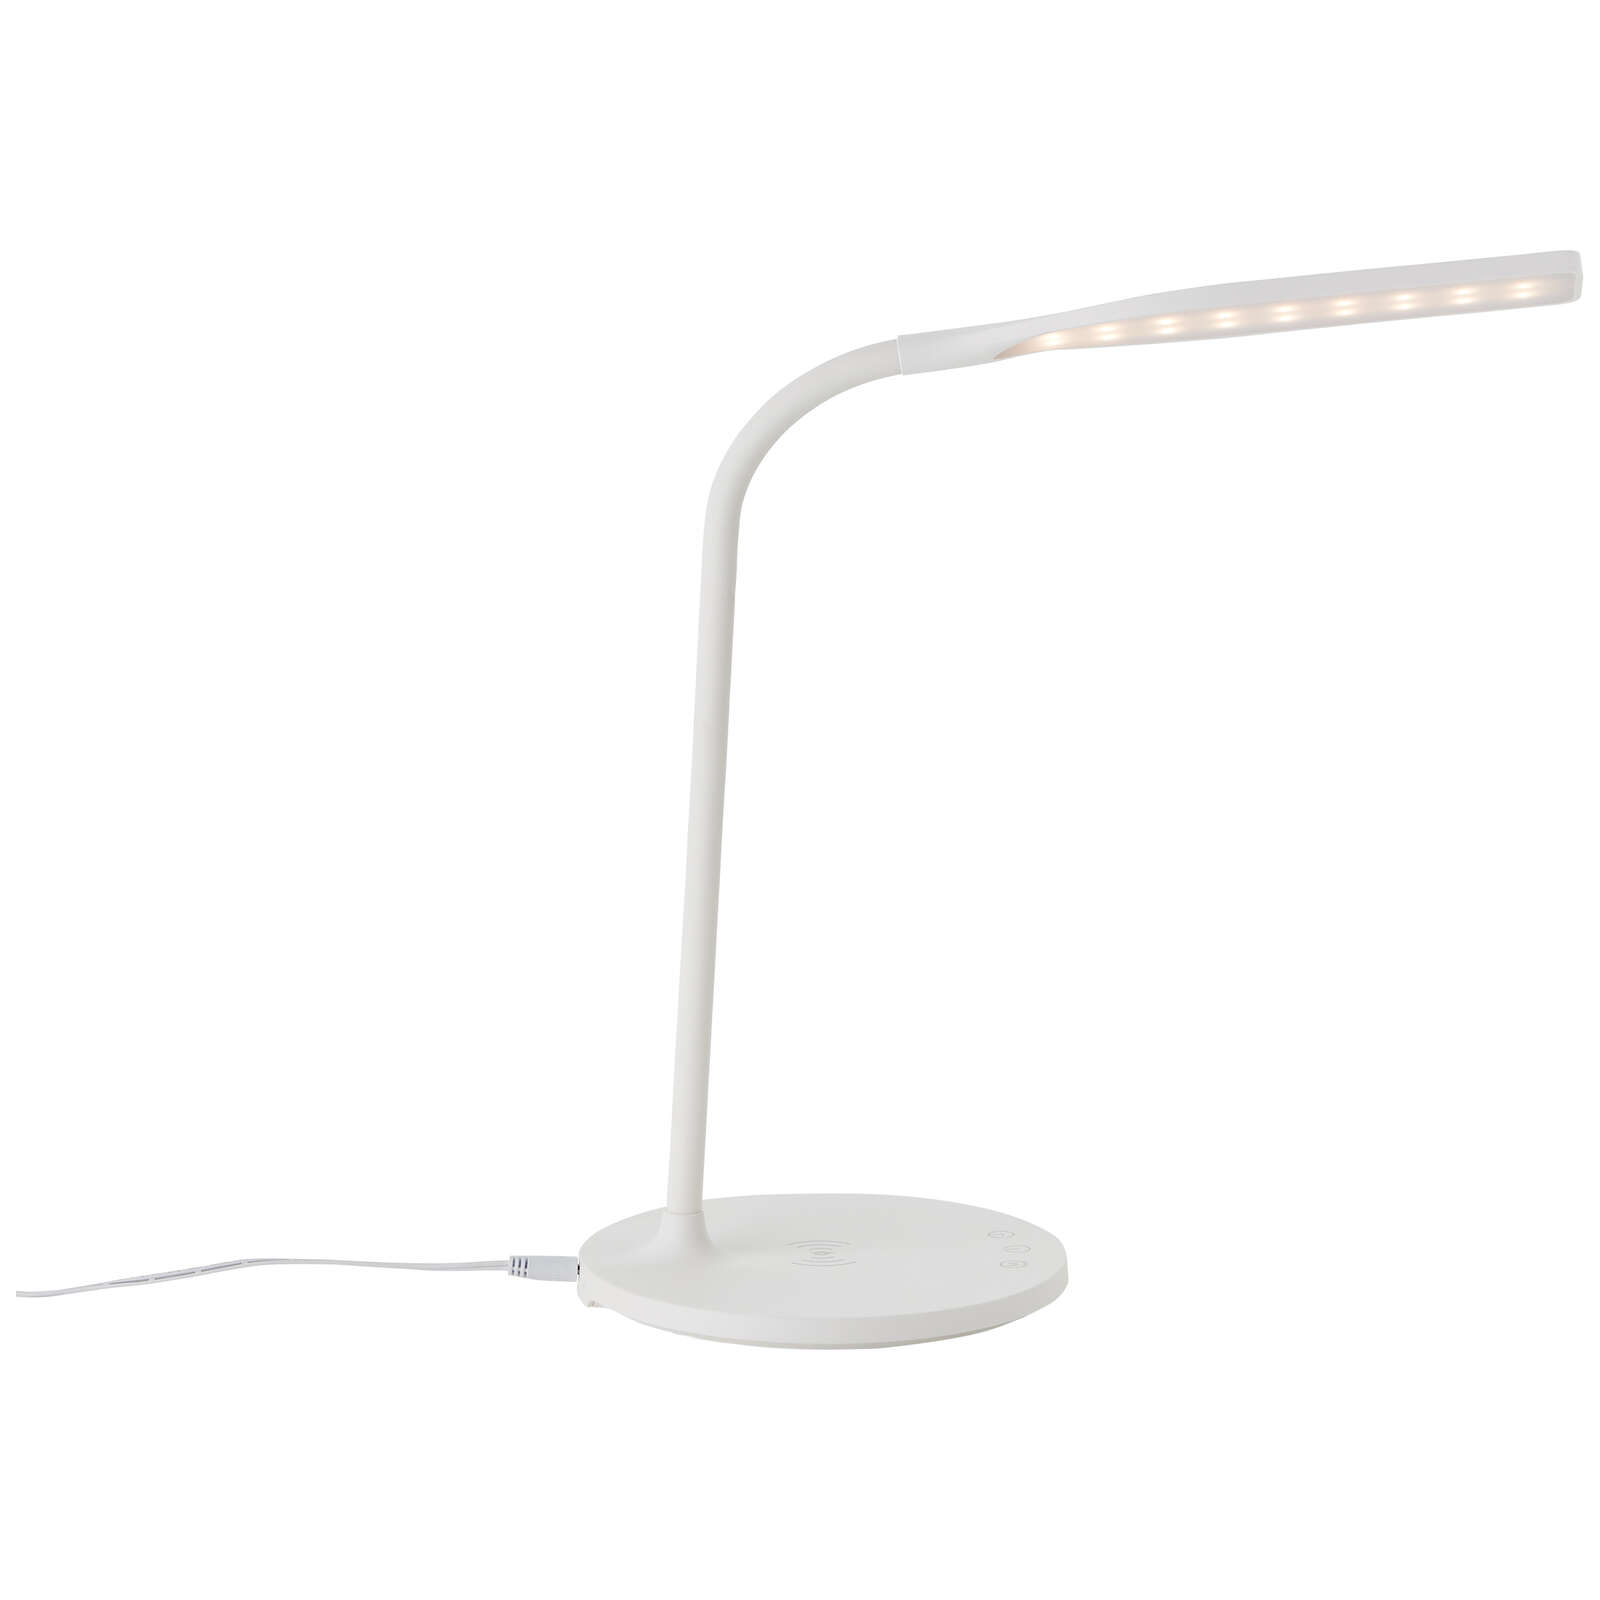             Lampe de table en plastique - Joy - Blanc
        